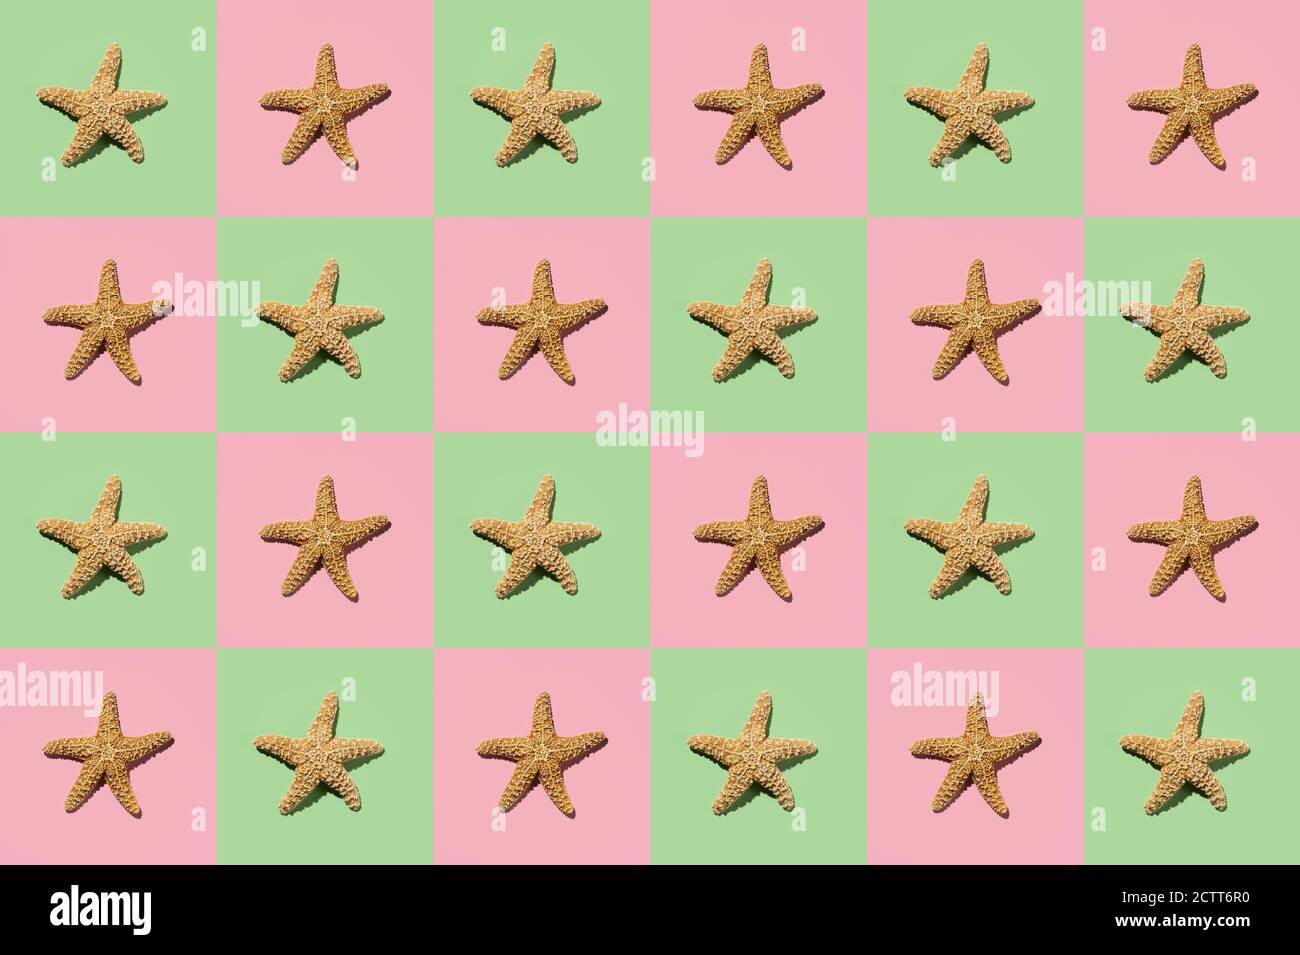 Disegno grafico di stelle marine su sfondo giallo e rosa Foto Stock